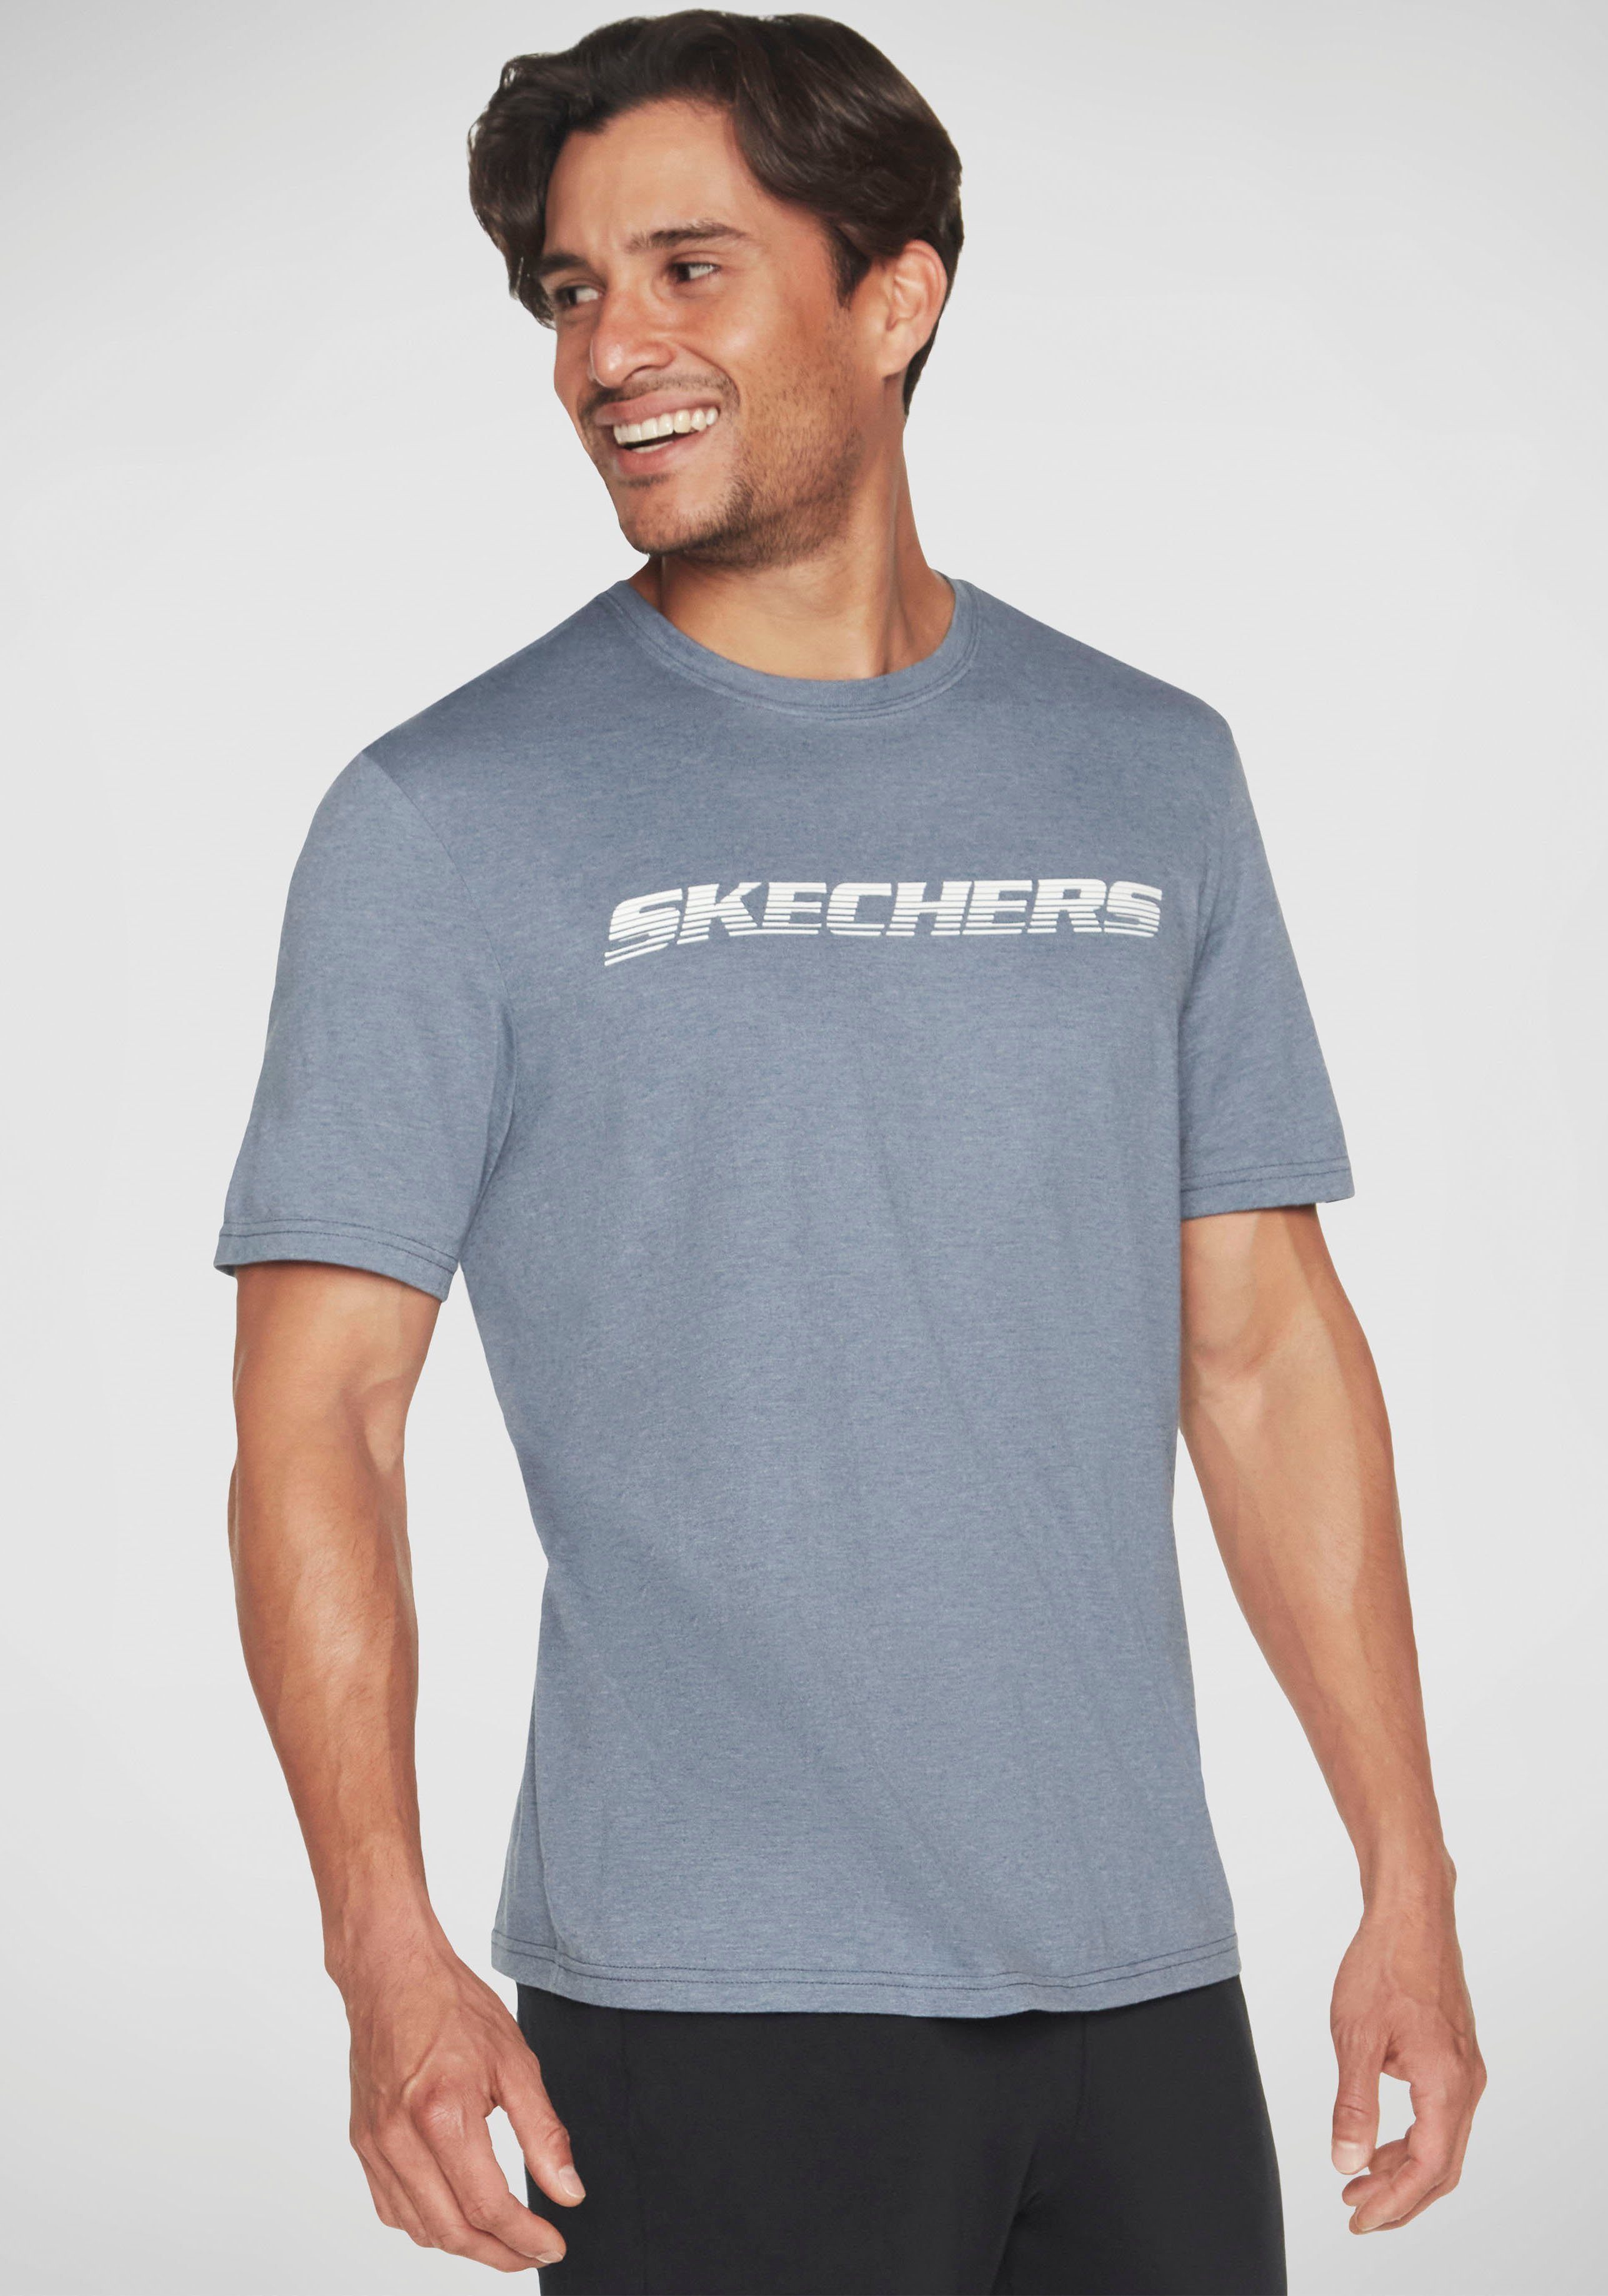 Skechers T-Shirt MOTION blaugrau TEE